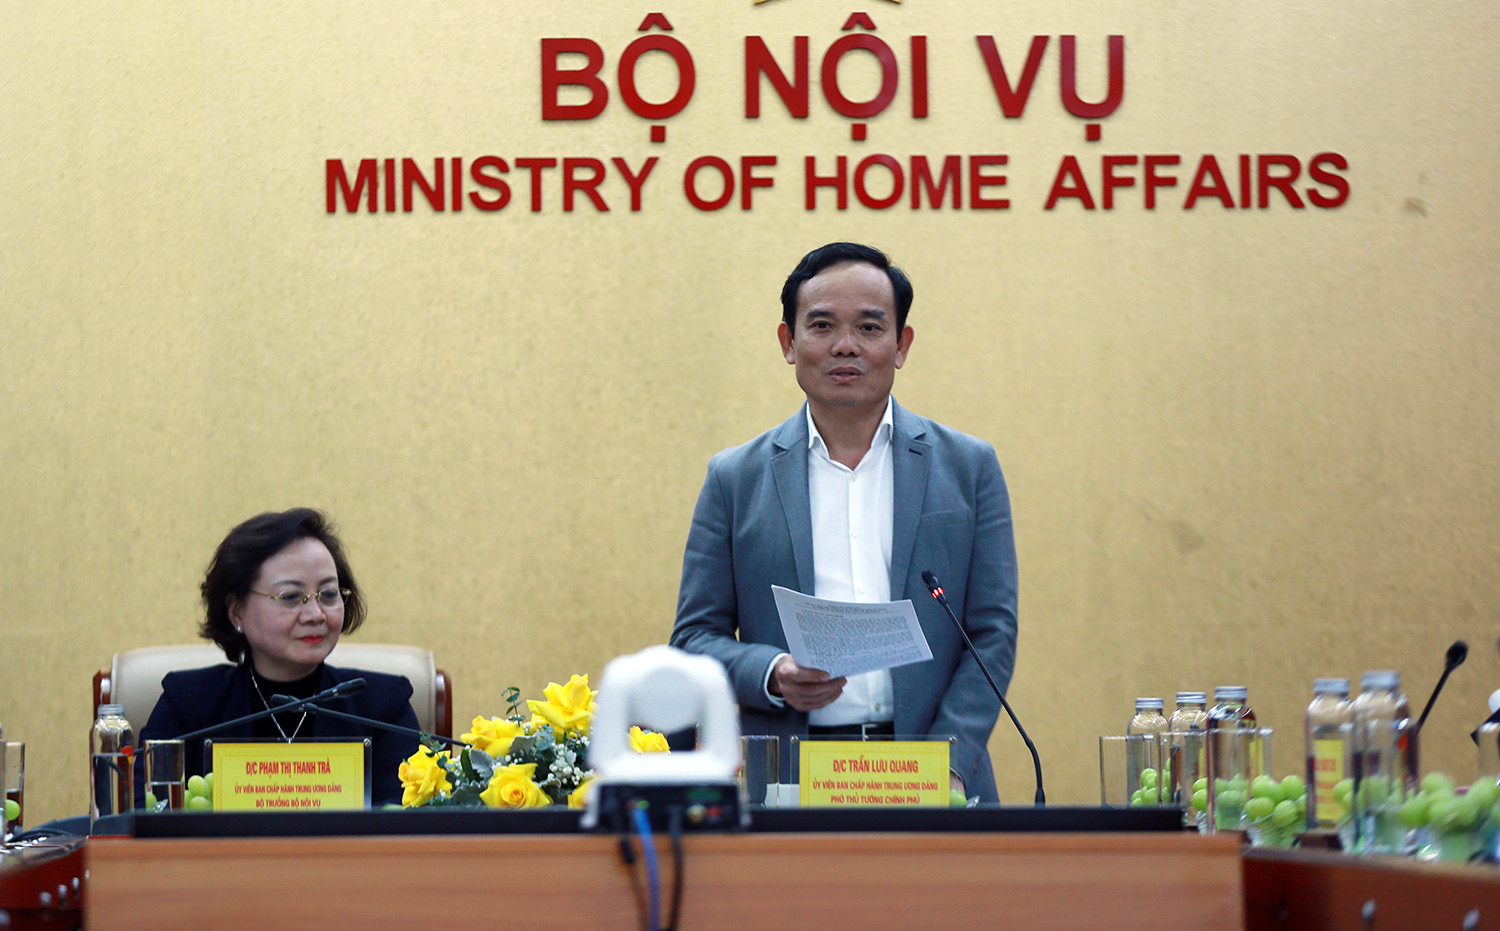 Phó Thủ tướng Trần Lưu Quang làm việc với Bộ Nội vụ - Ảnh 1.